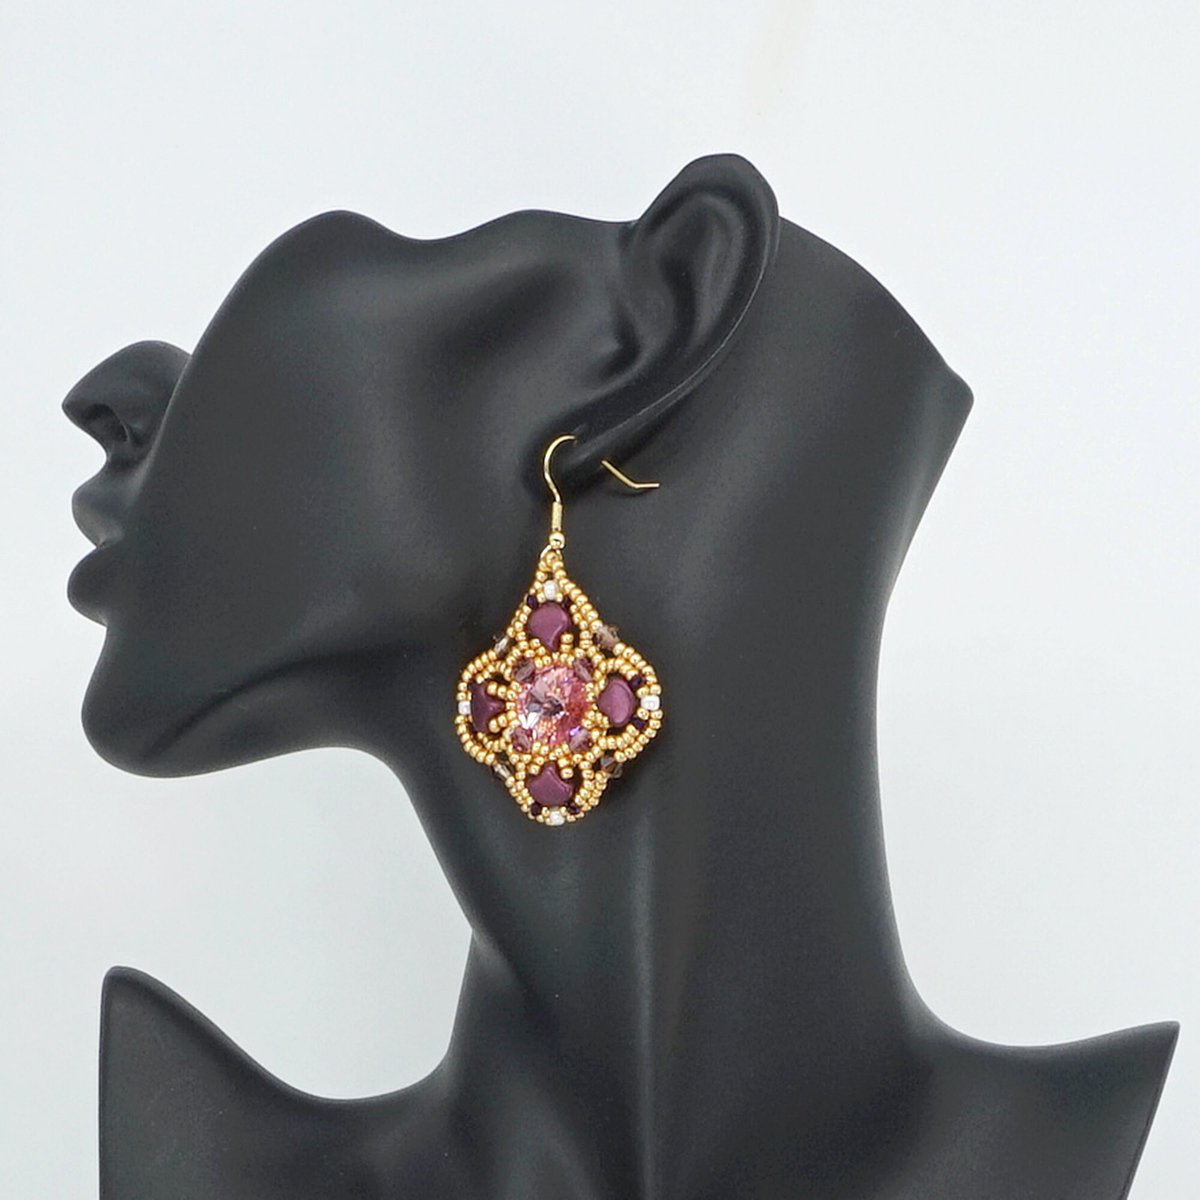 Beaded dangle earrings #etsy #gifthandmade #earrings #beadedearrings #etsyshop #bohojewelry #fashion 
tizianat.etsy.com/listing/157322…